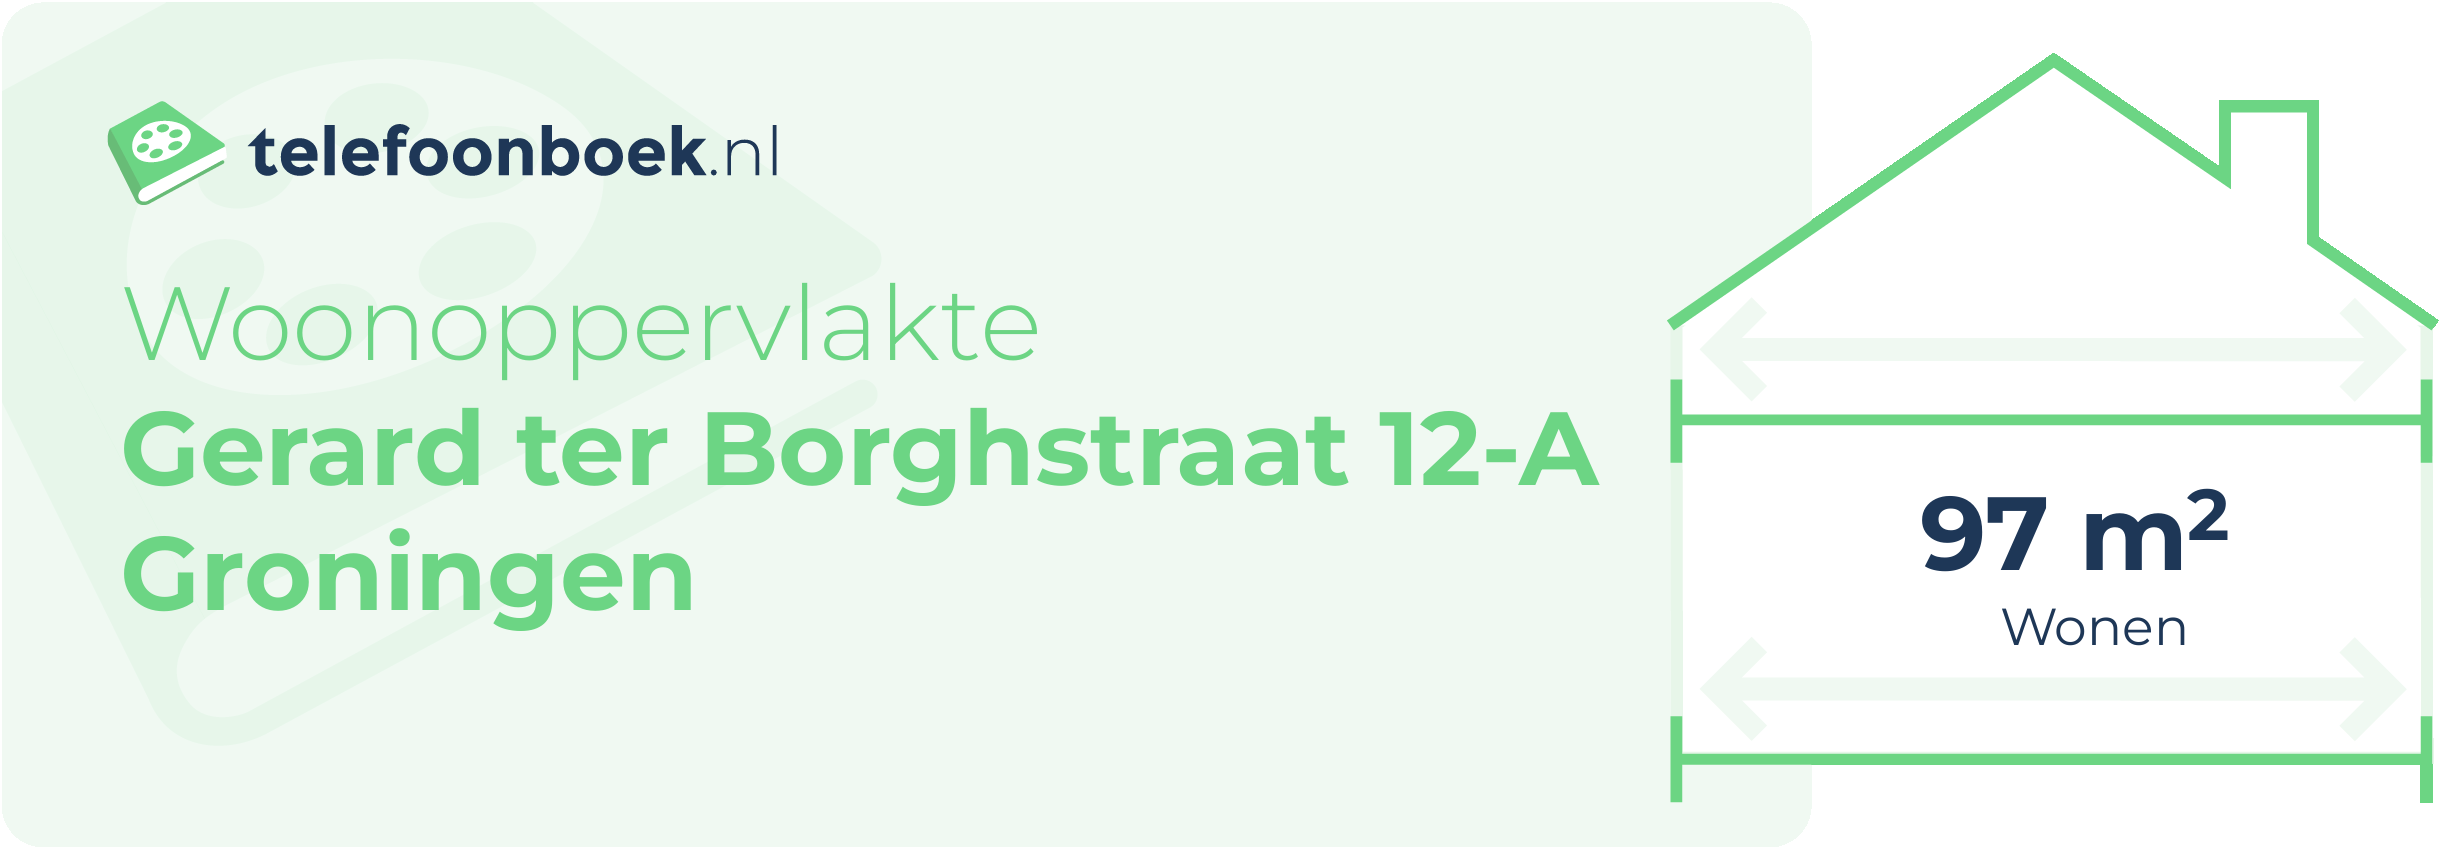 Woonoppervlakte Gerard Ter Borghstraat 12-A Groningen